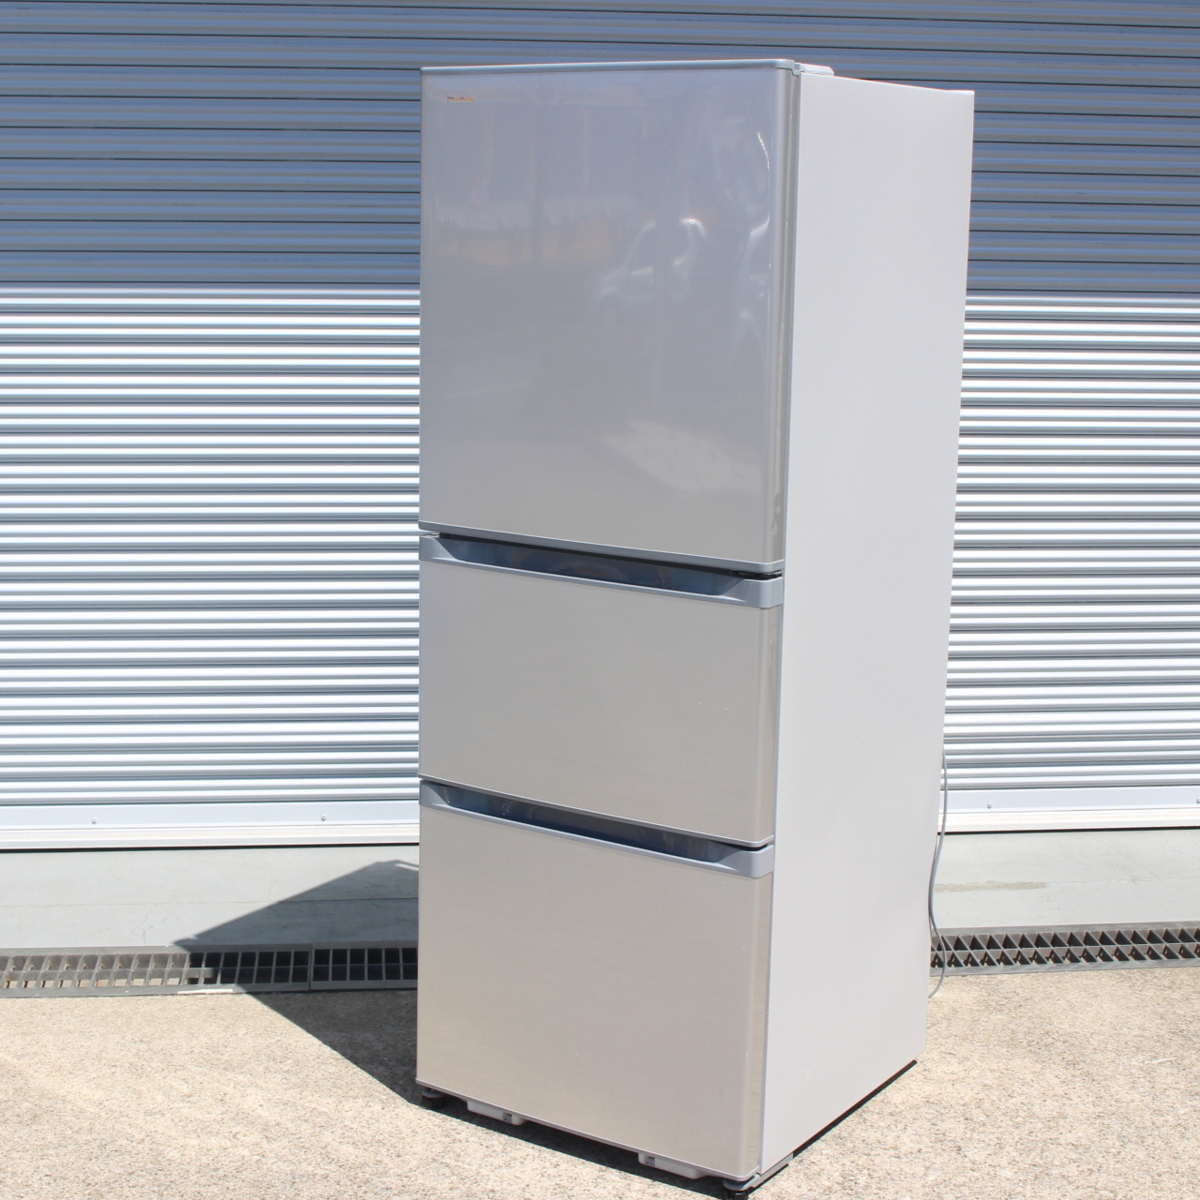 川崎市幸区にて 東芝 冷蔵庫 GR-R33S 2019年製 を出張買取させて頂きました。